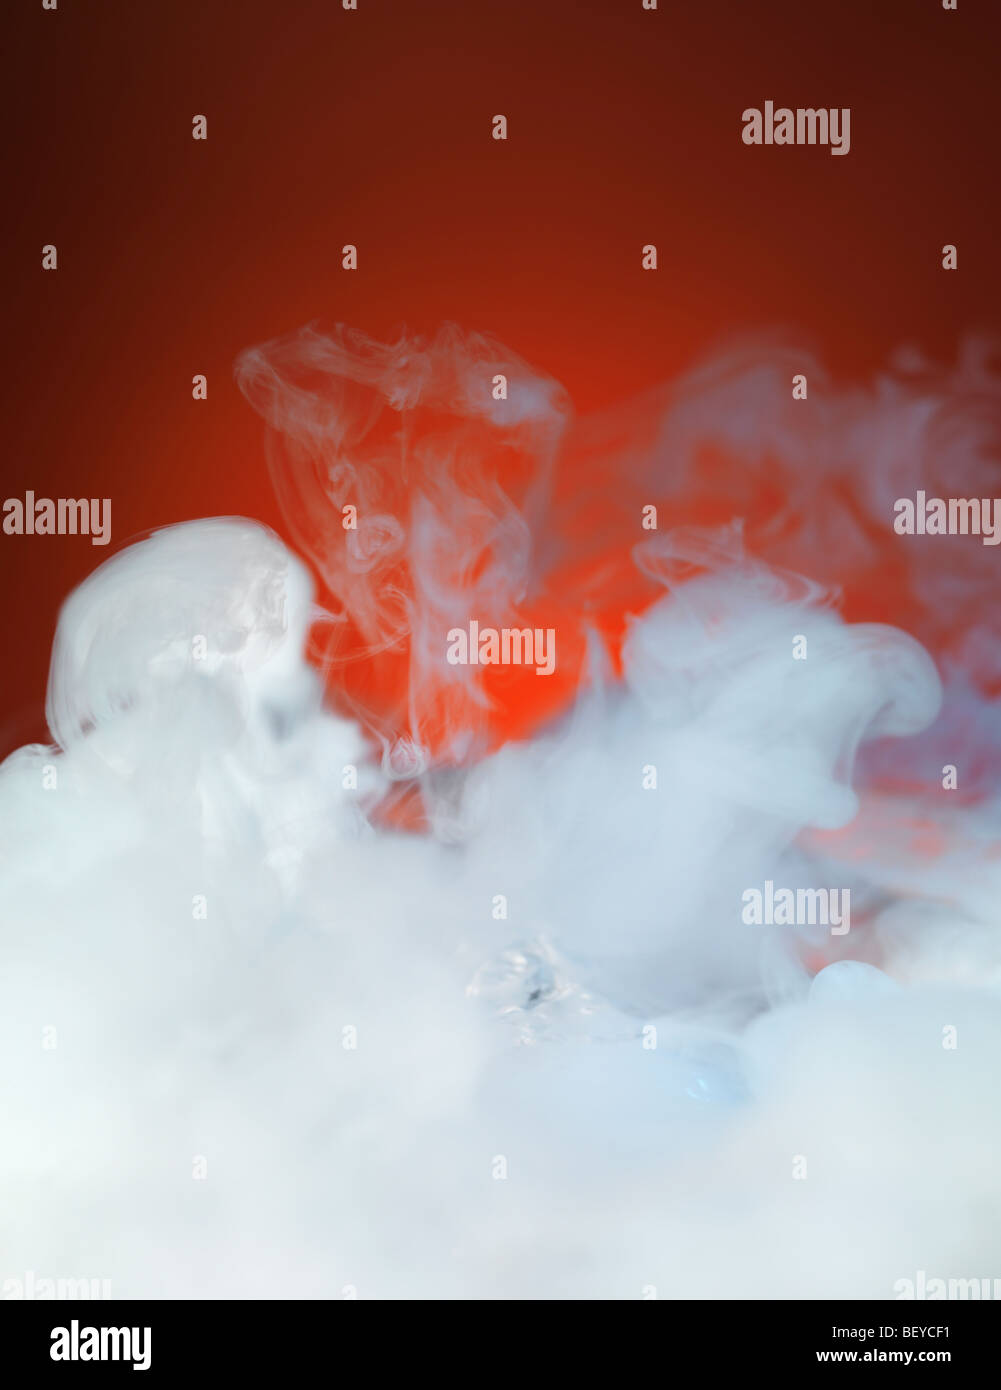 Dense white smoke on red background Stock Photo